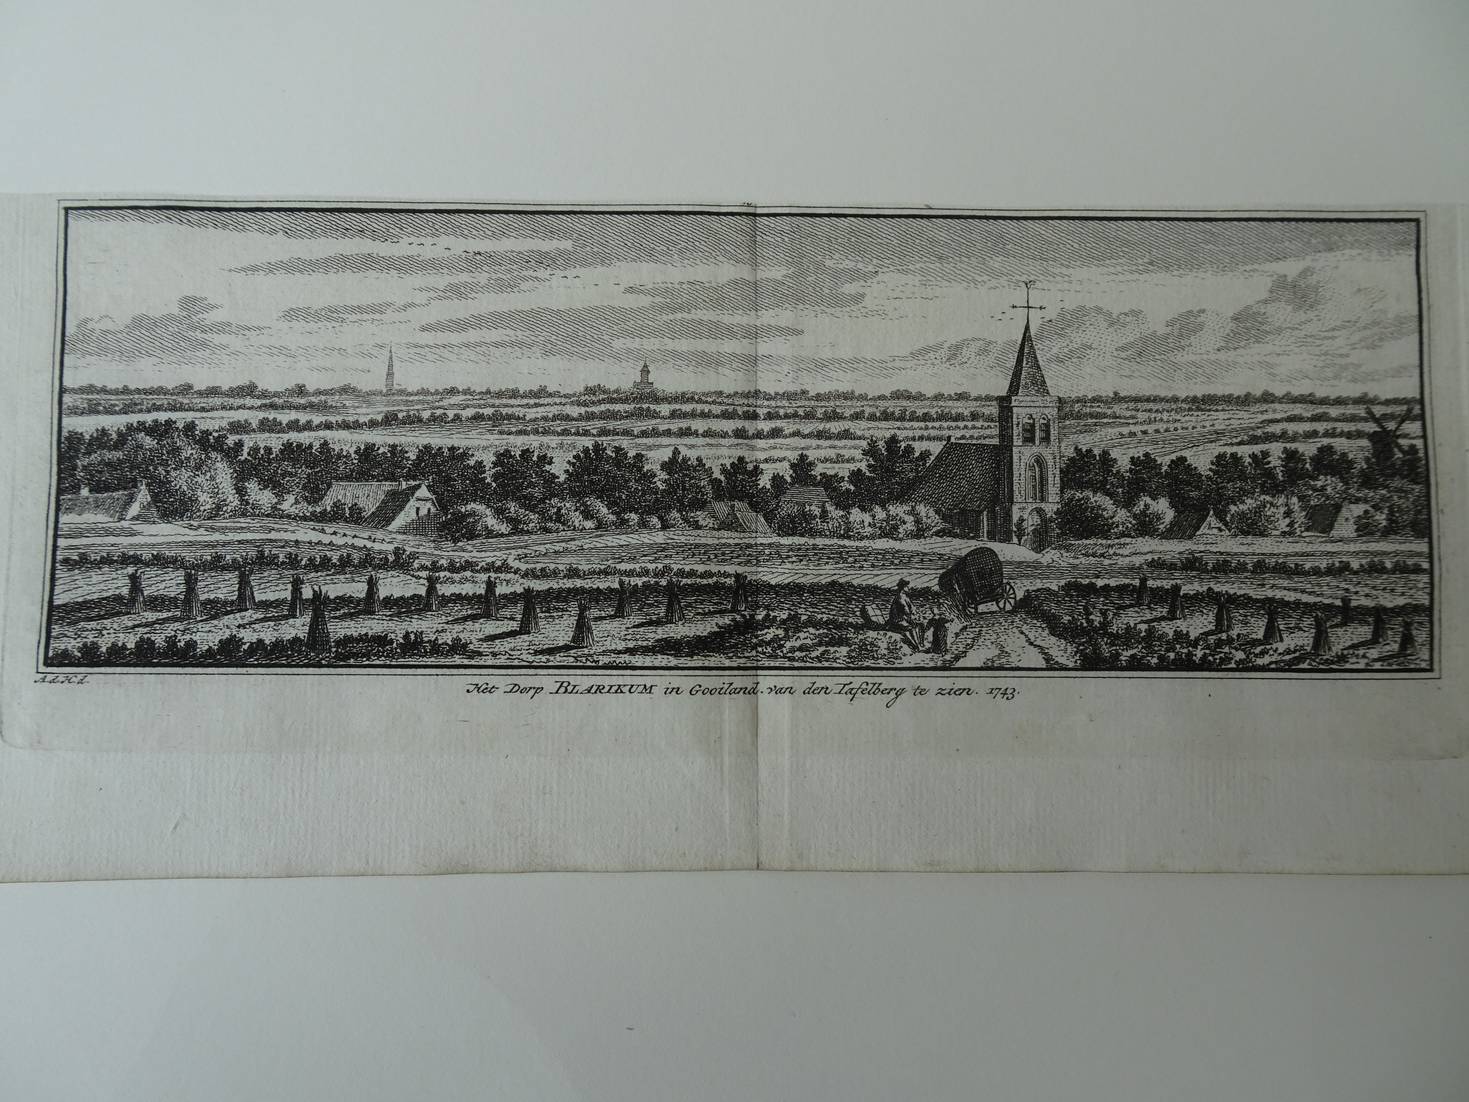 Blaricum. - Het Dorp Blarikum in Gooiland van den Tafelberg te zien, 1743.